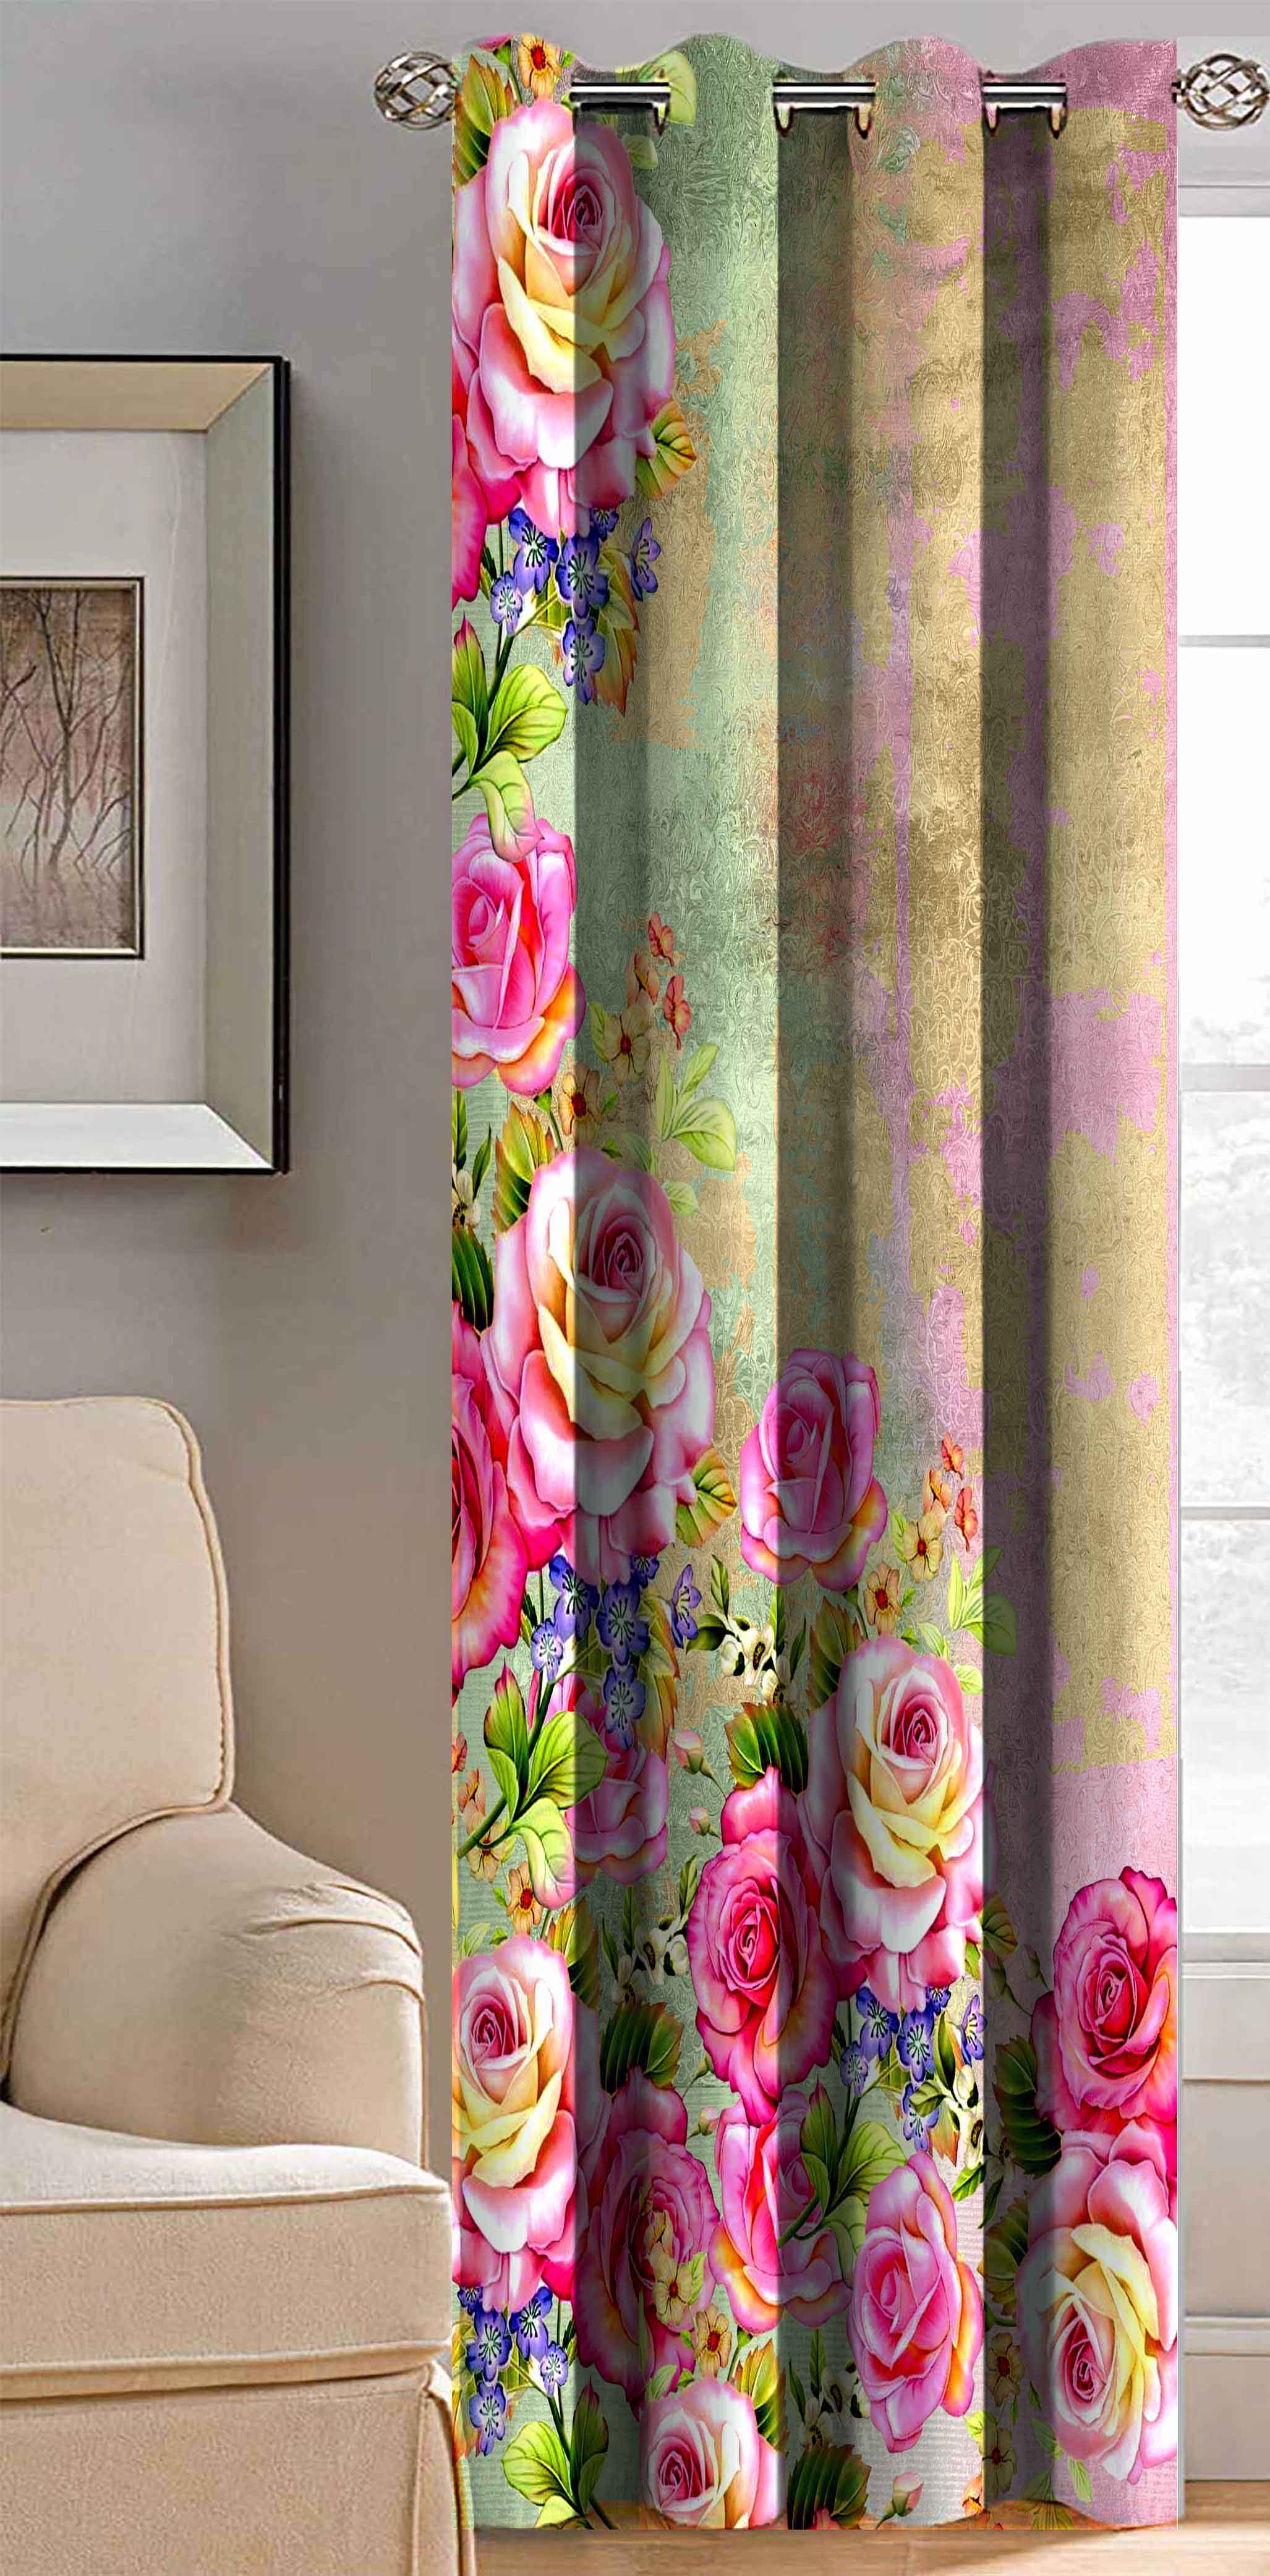     			BELLA TRUE Floral Room Darkening Eyelet Curtain 7 ft ( Pack of 1 ) - Multicolor